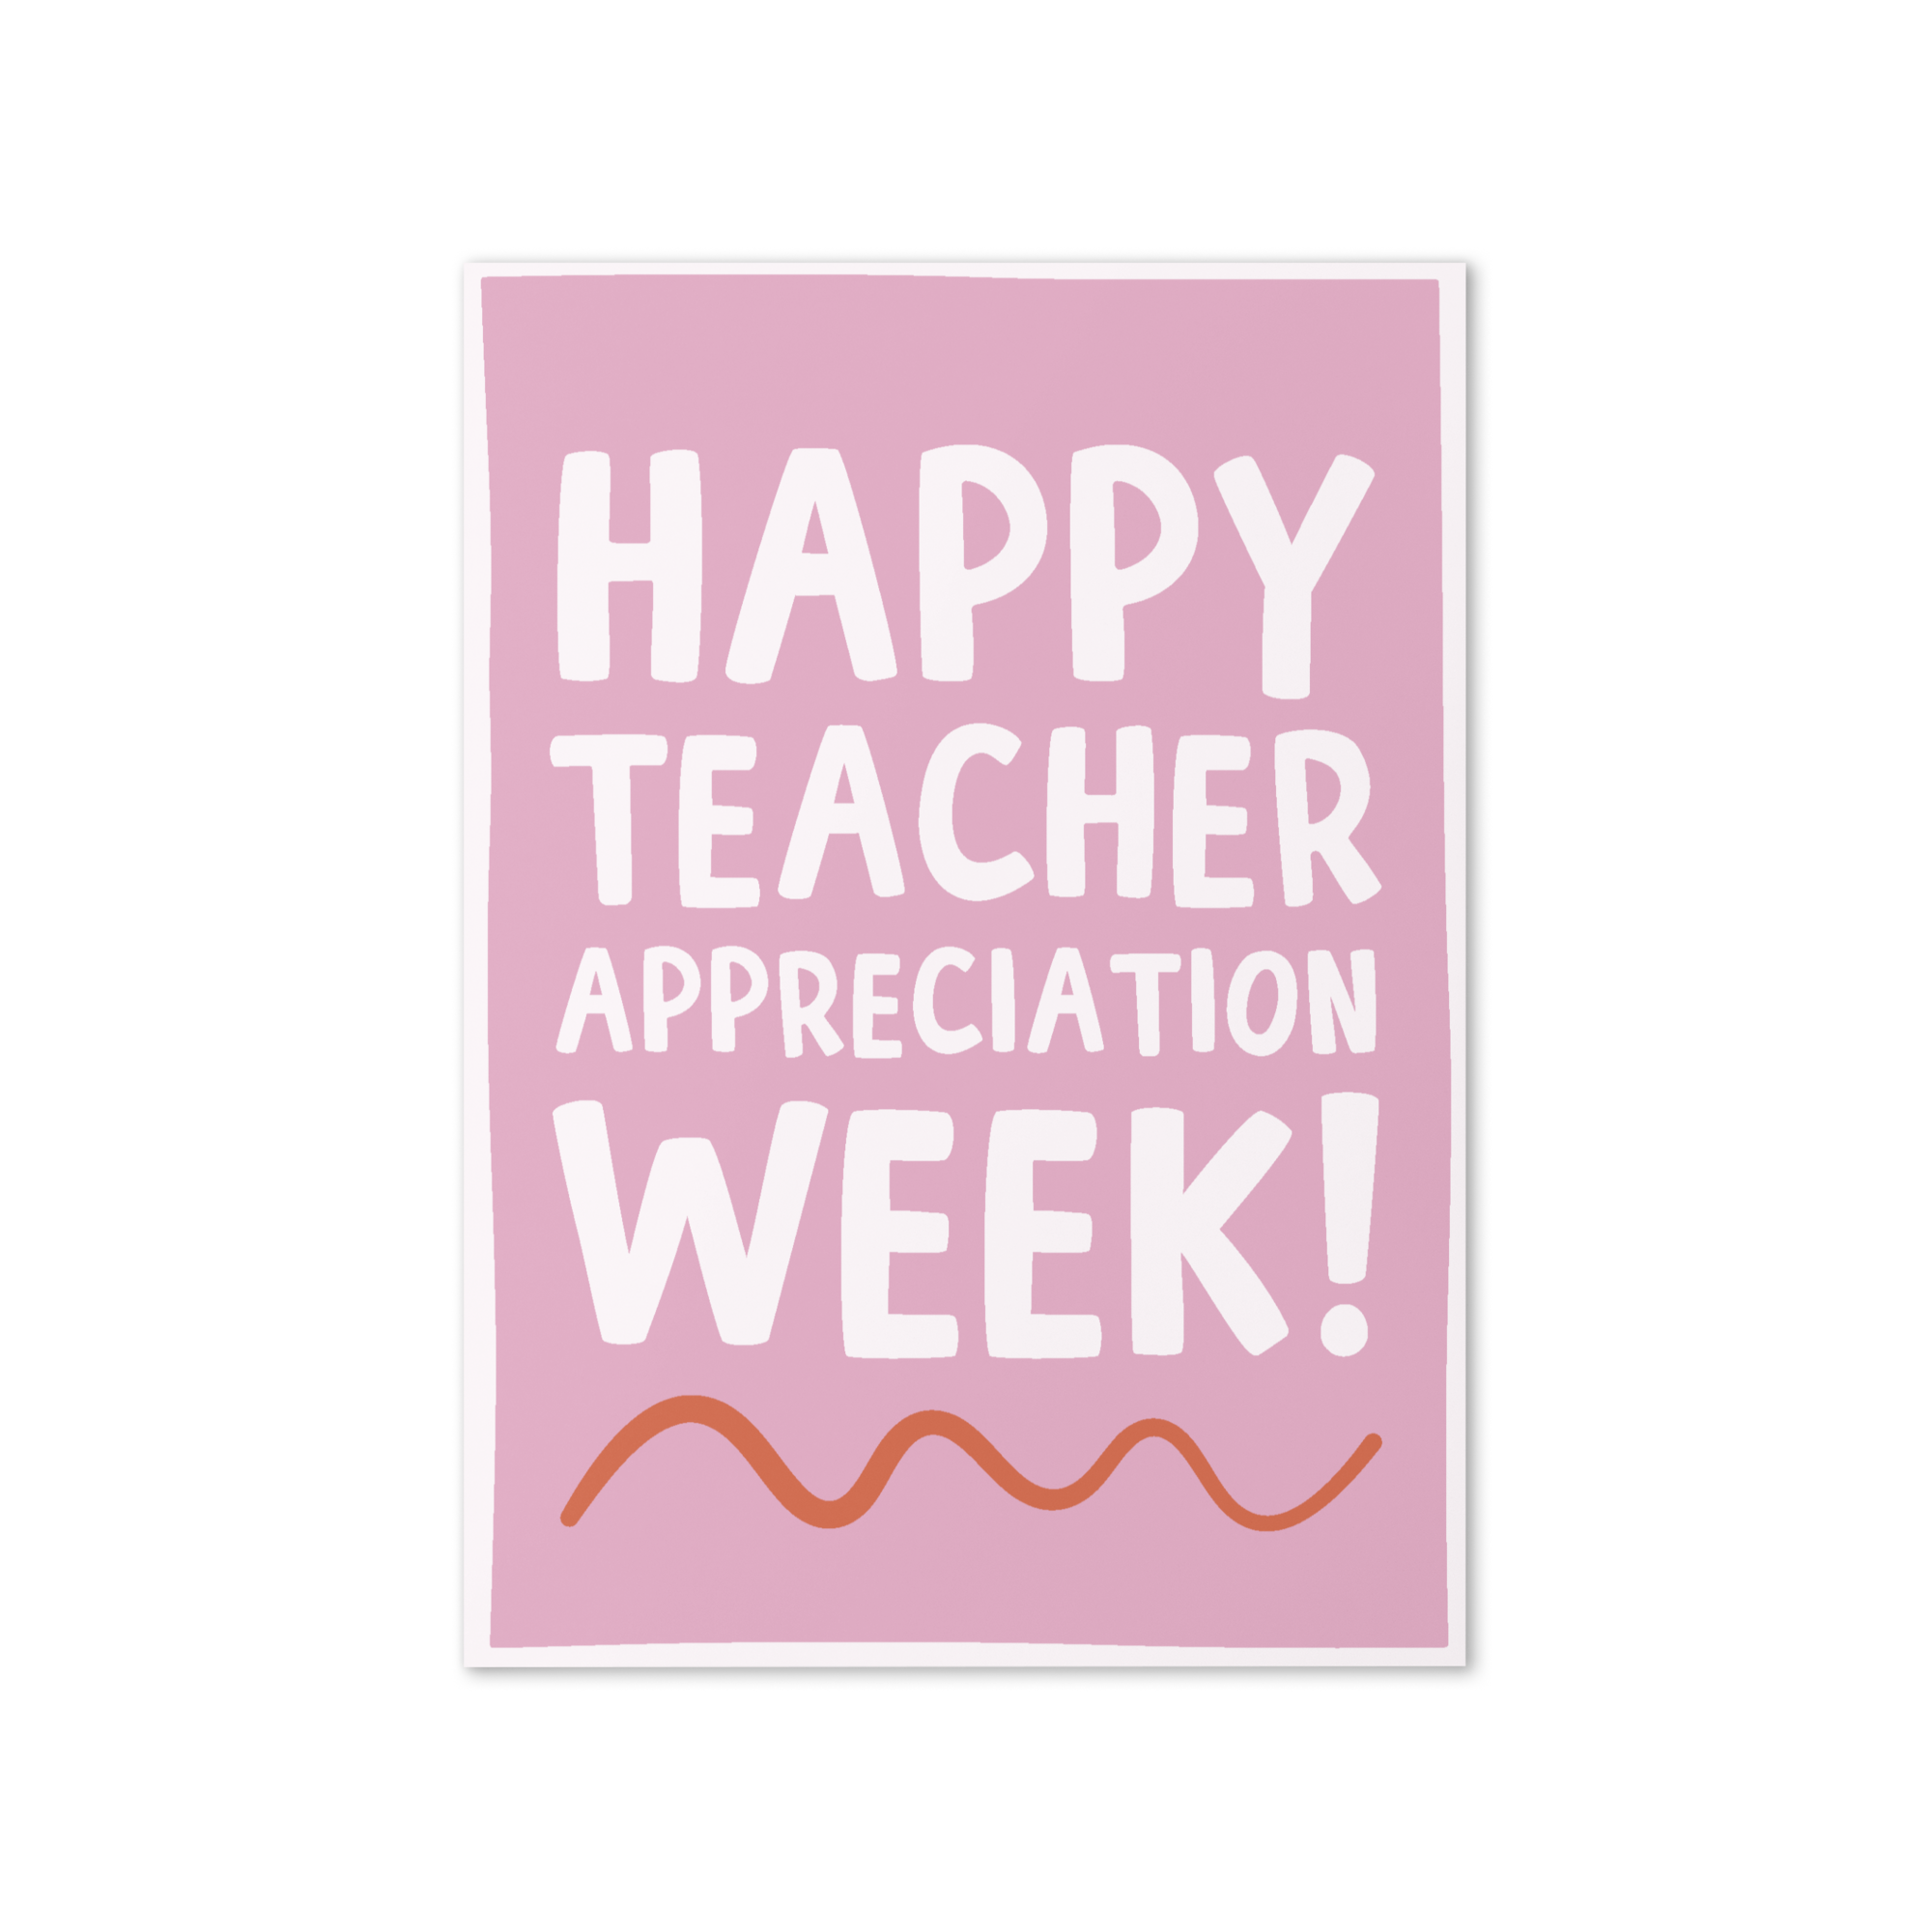 Happy Teacher Appreciation Week Greeting Card